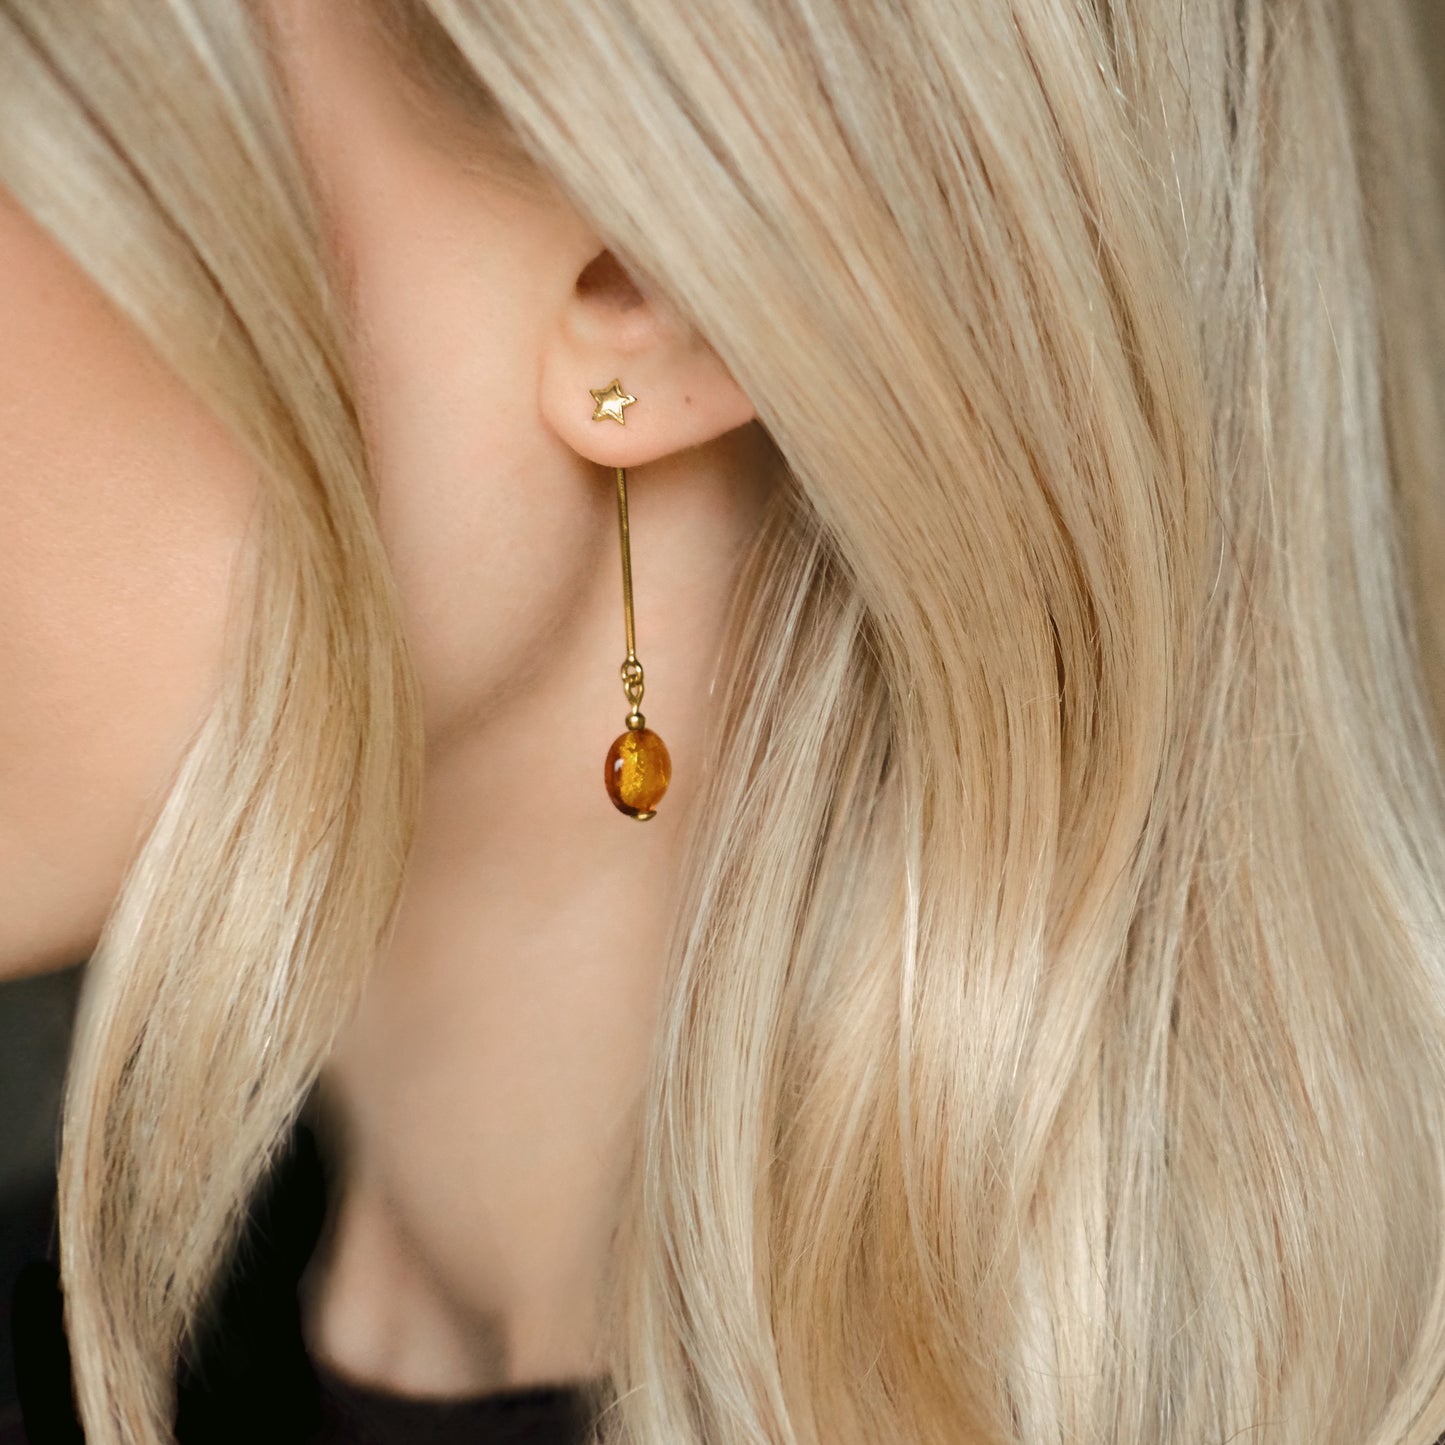 Star Stud Earrings - Gold Vermeil